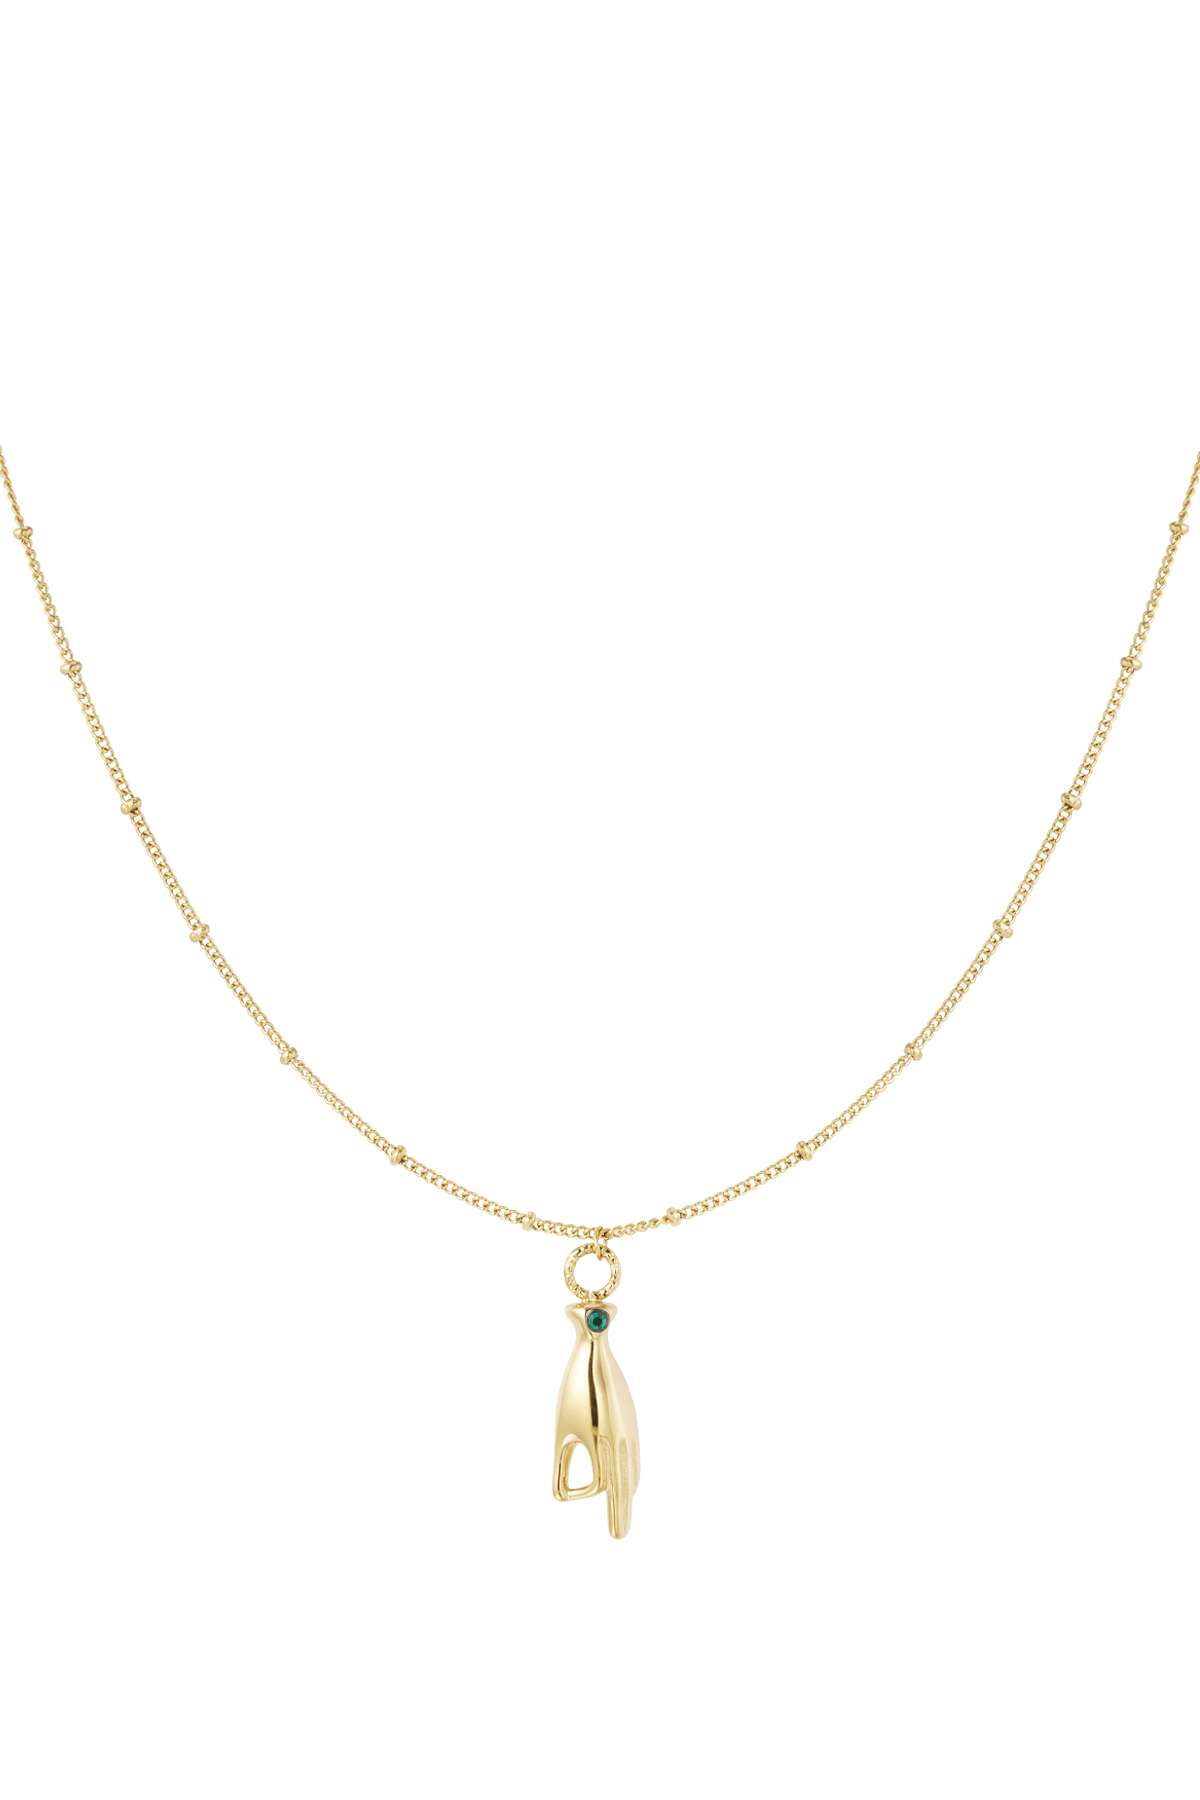 Halskette Handanhänger mit Stein – Gold/Grün h5 